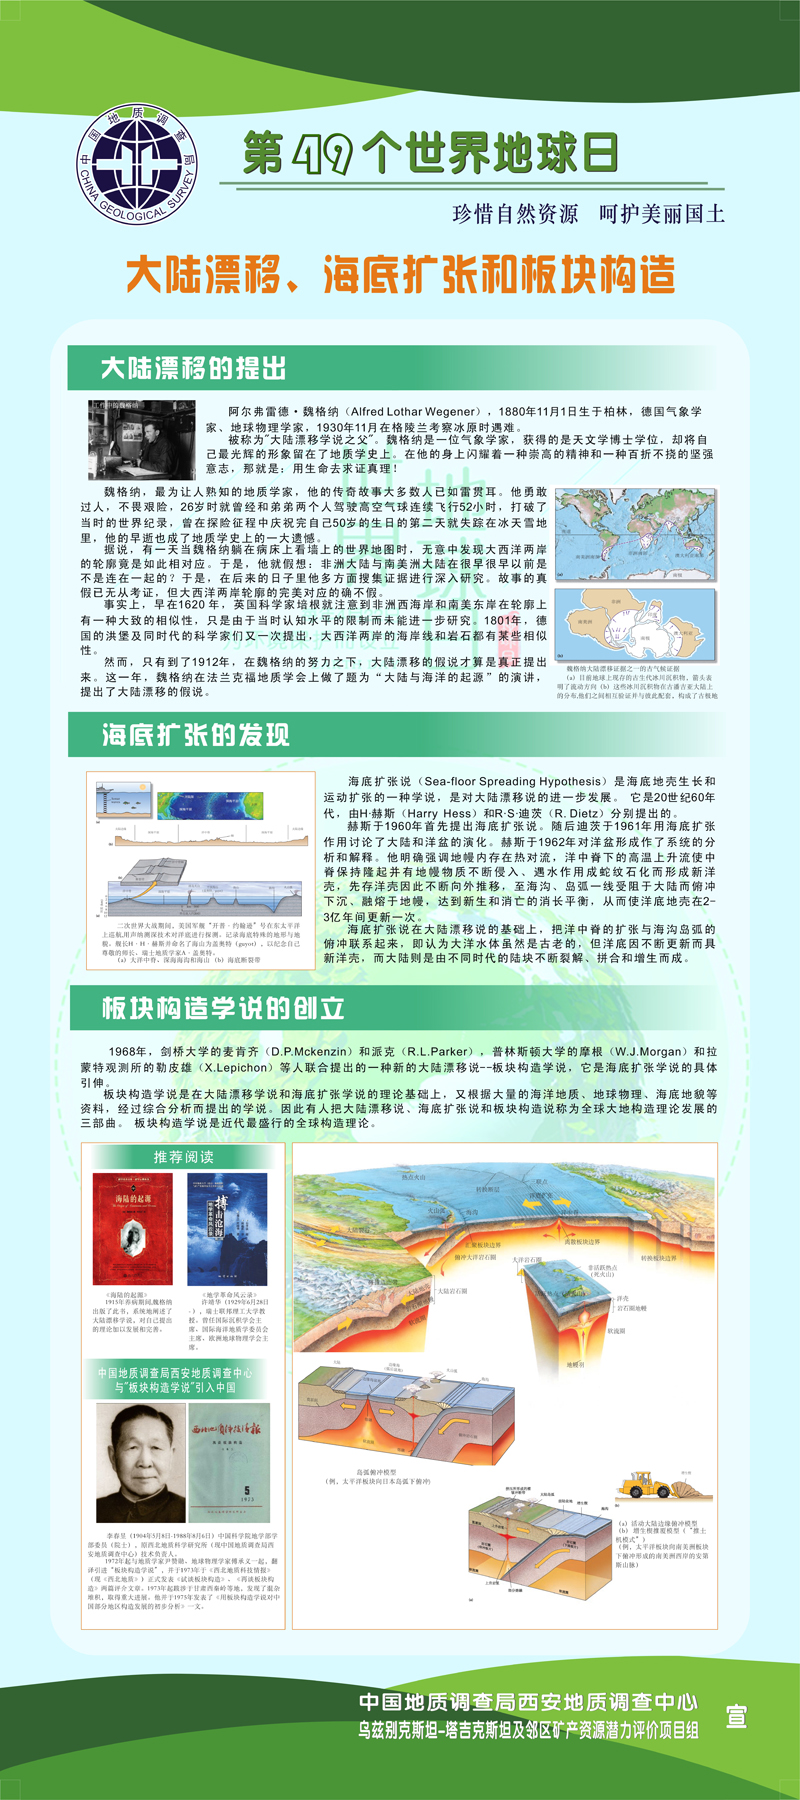 中亚中心1-1.jpg